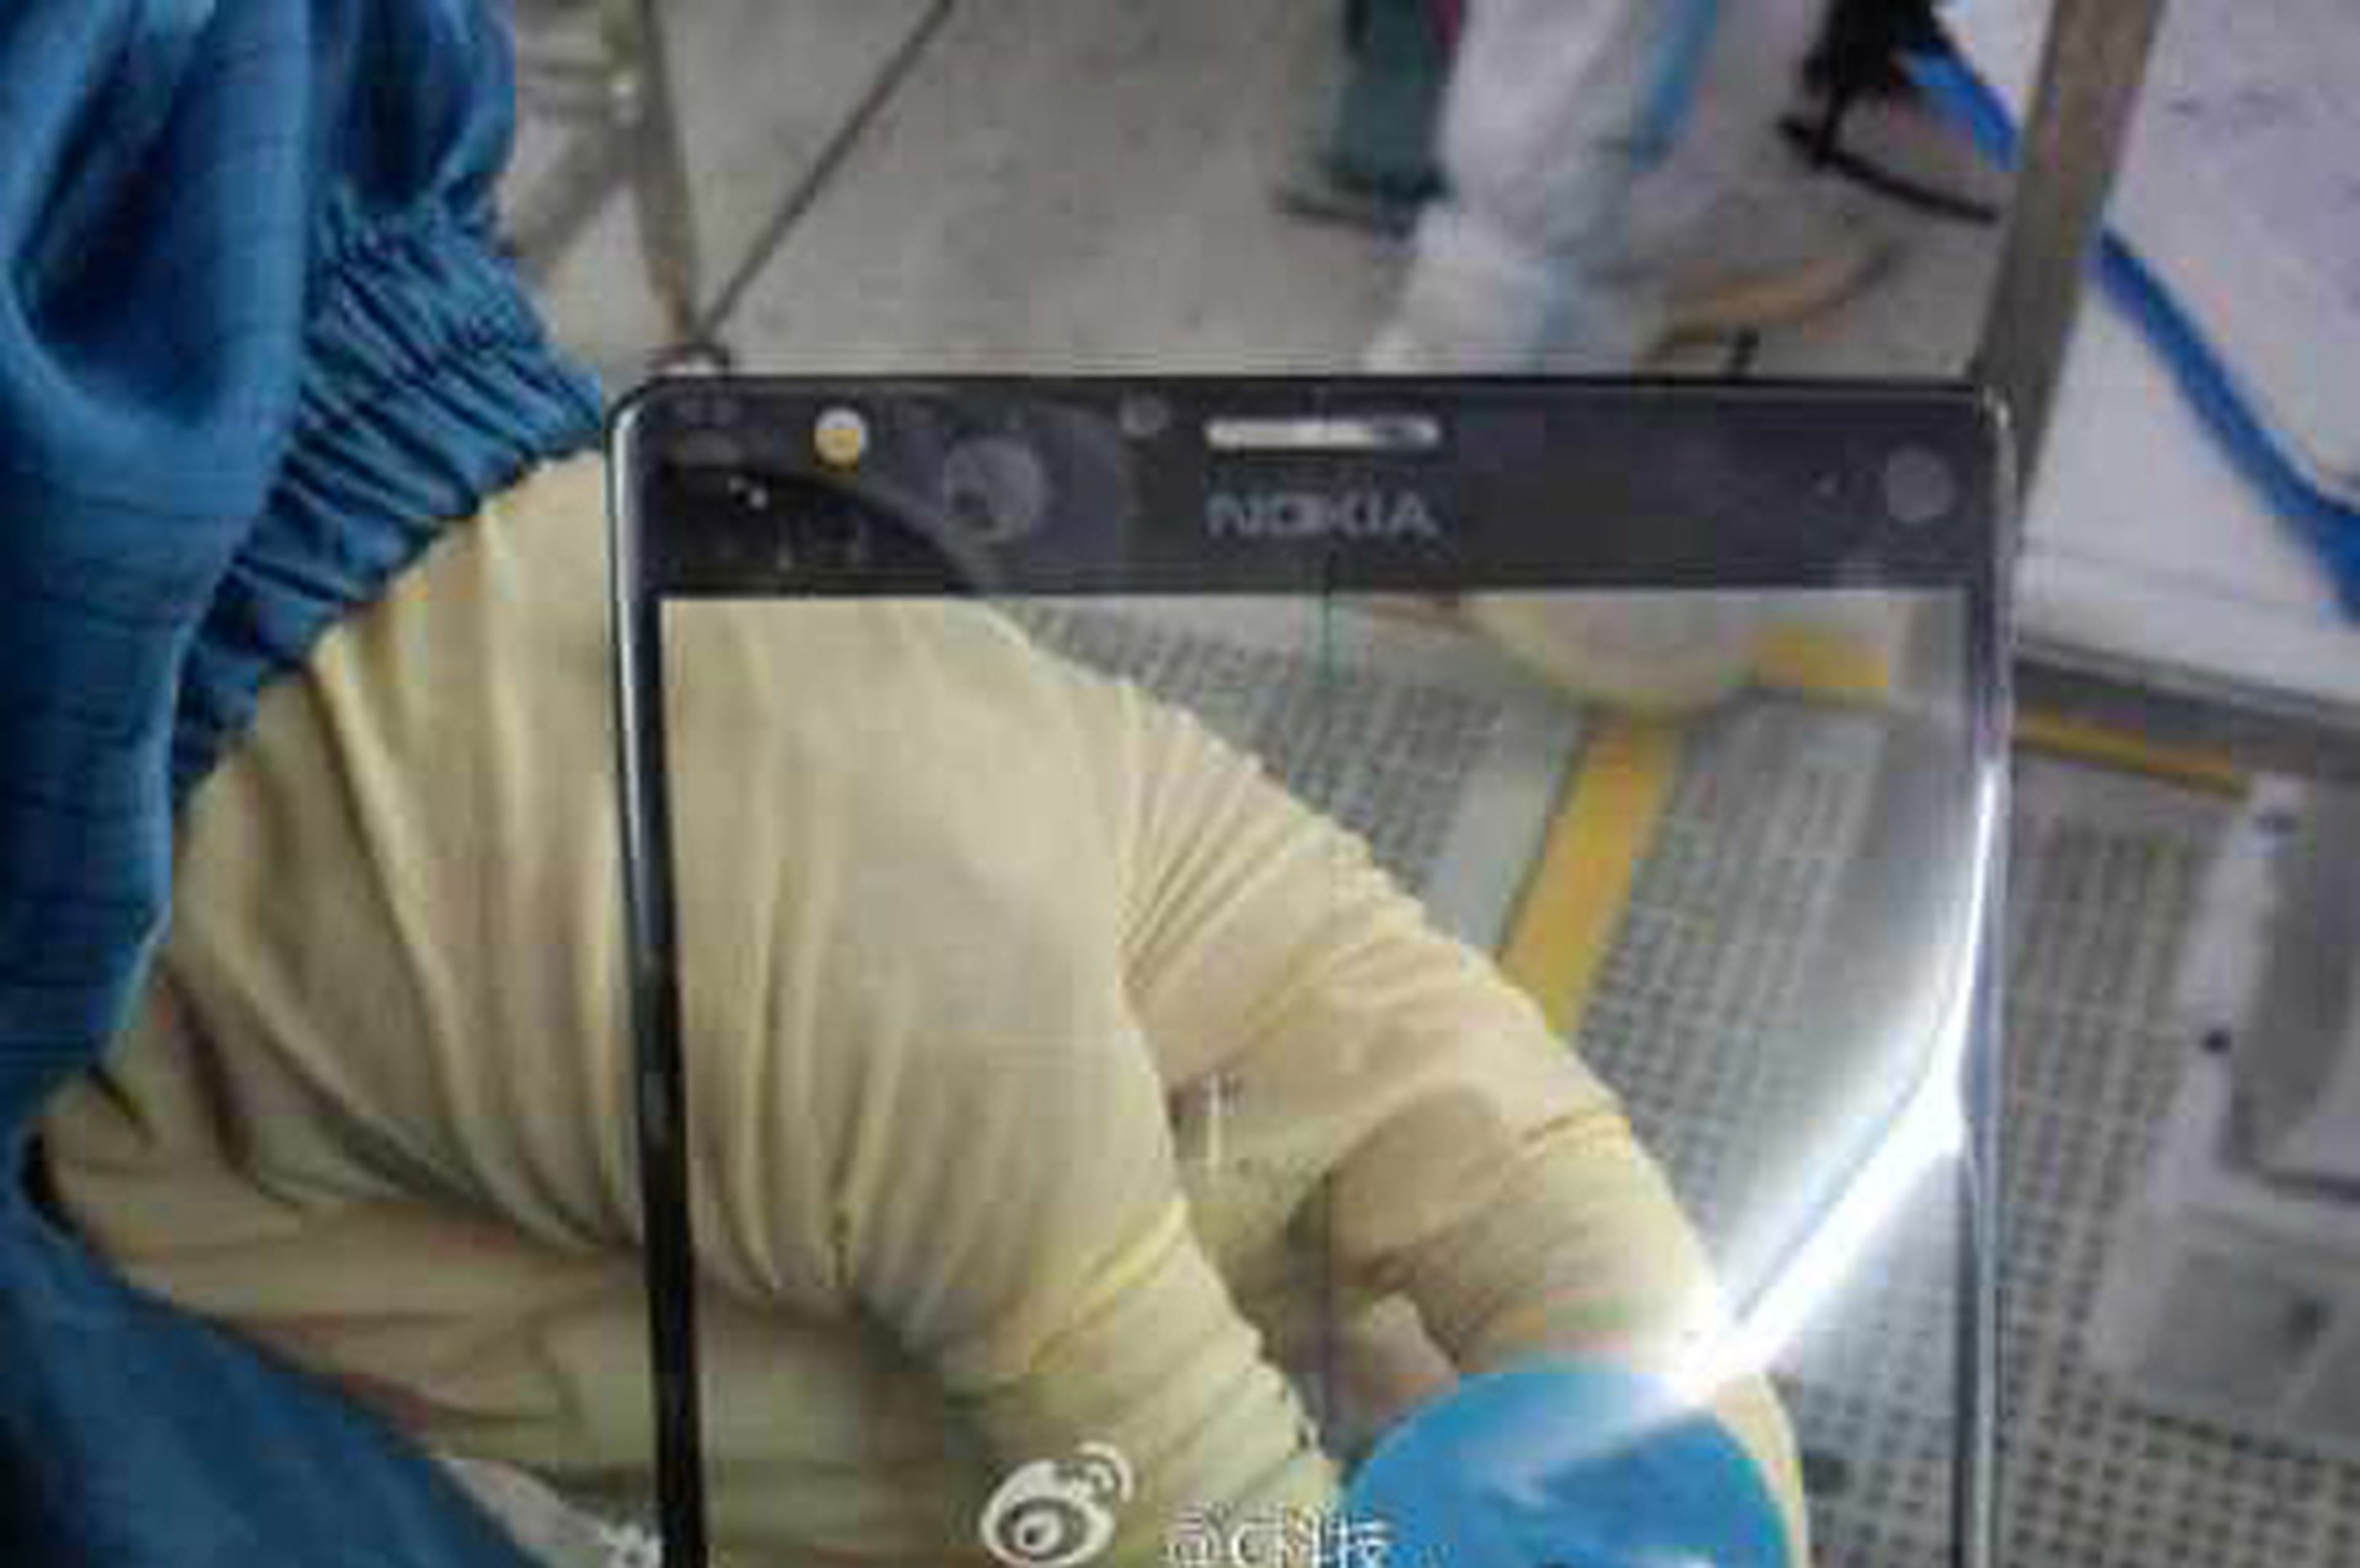 Te mostramos la pantalla de la nueva phablet de Nokia